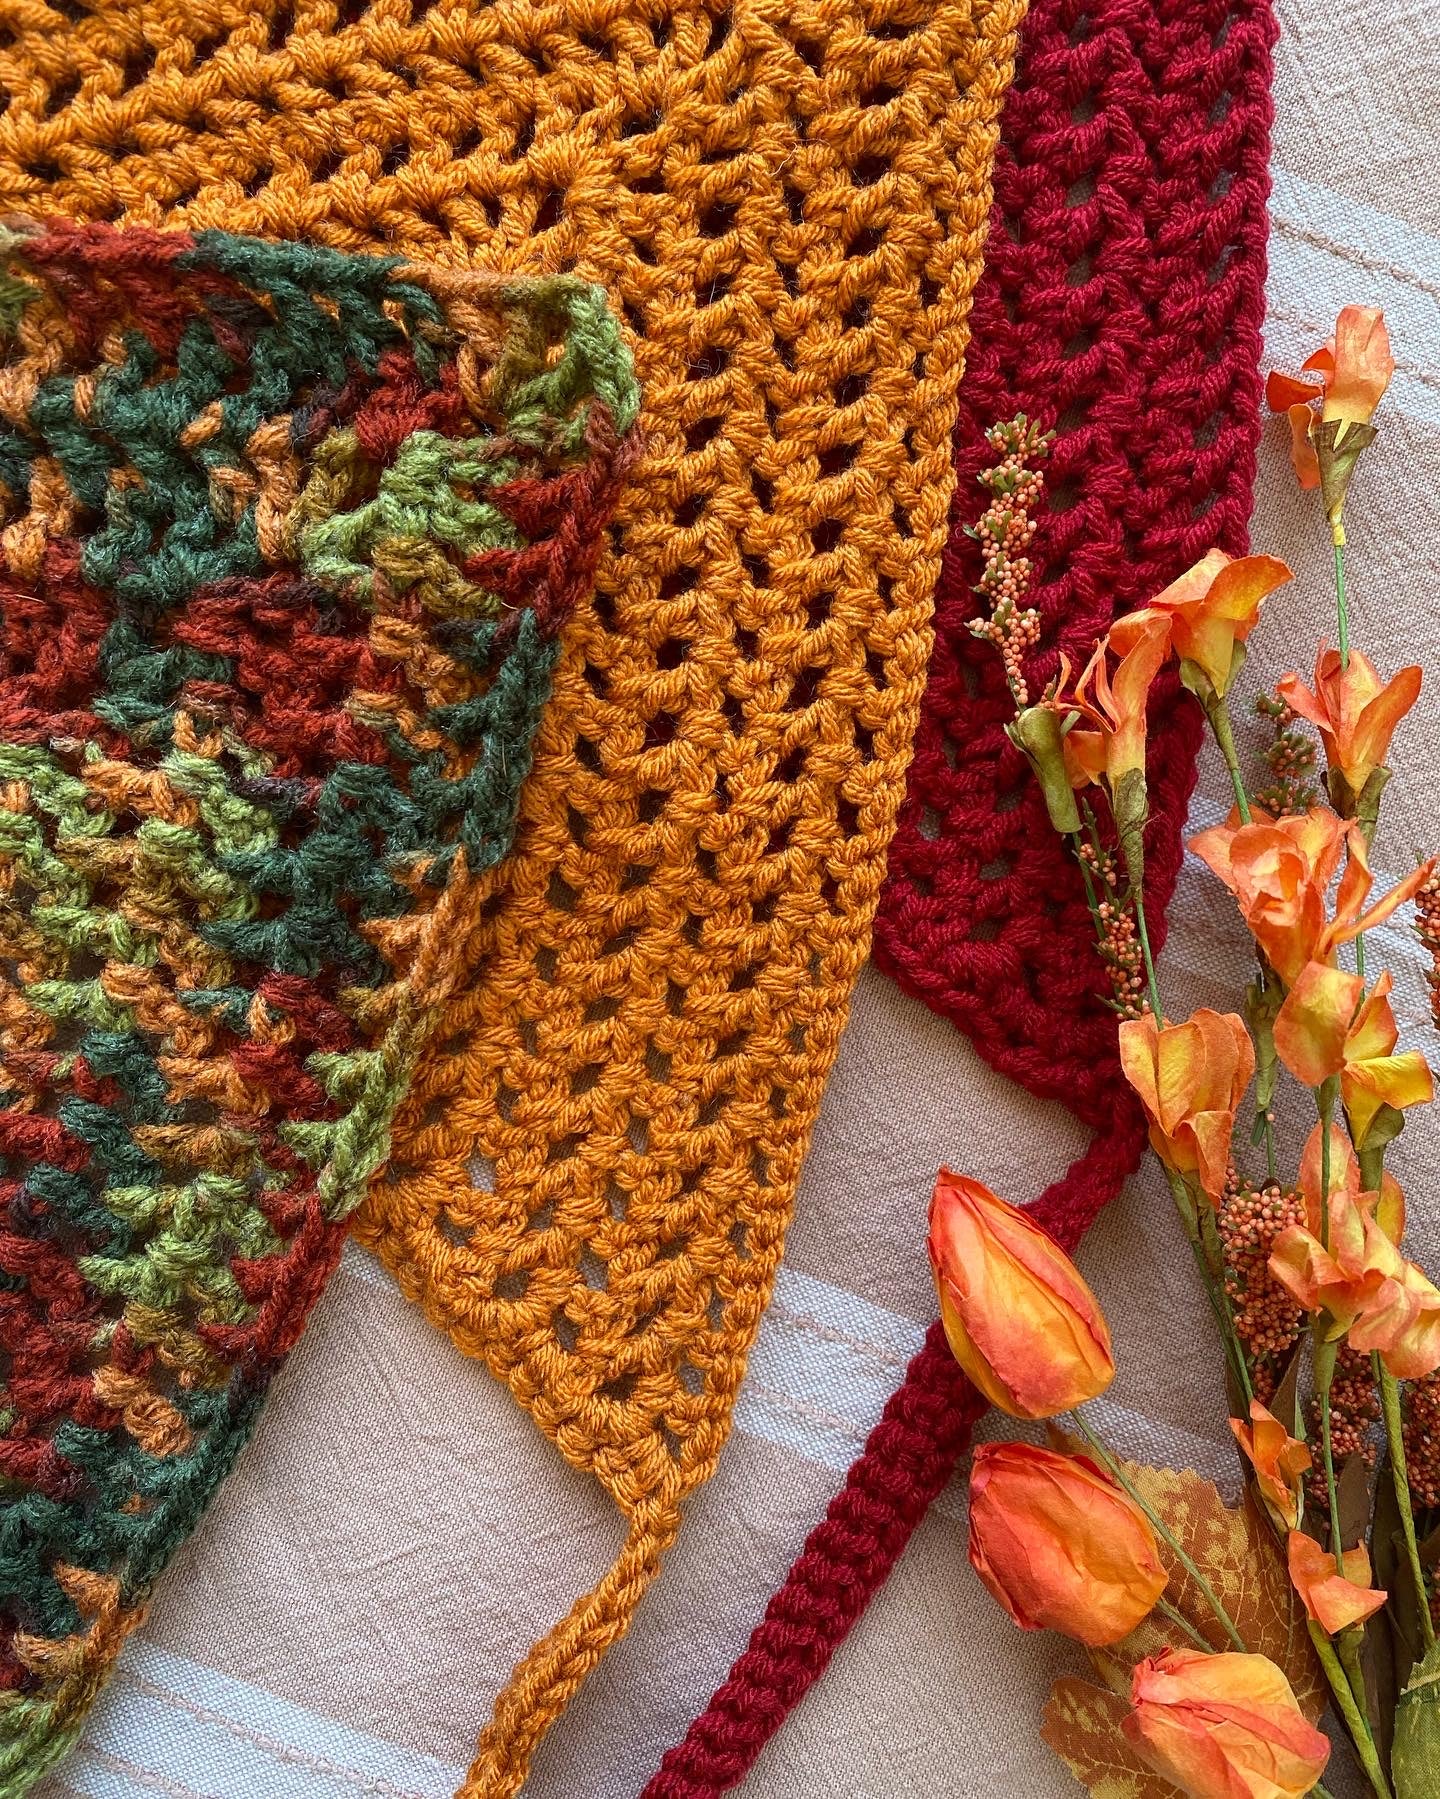 PDF Crochet Pattern | The Lazy Sunday Bandana